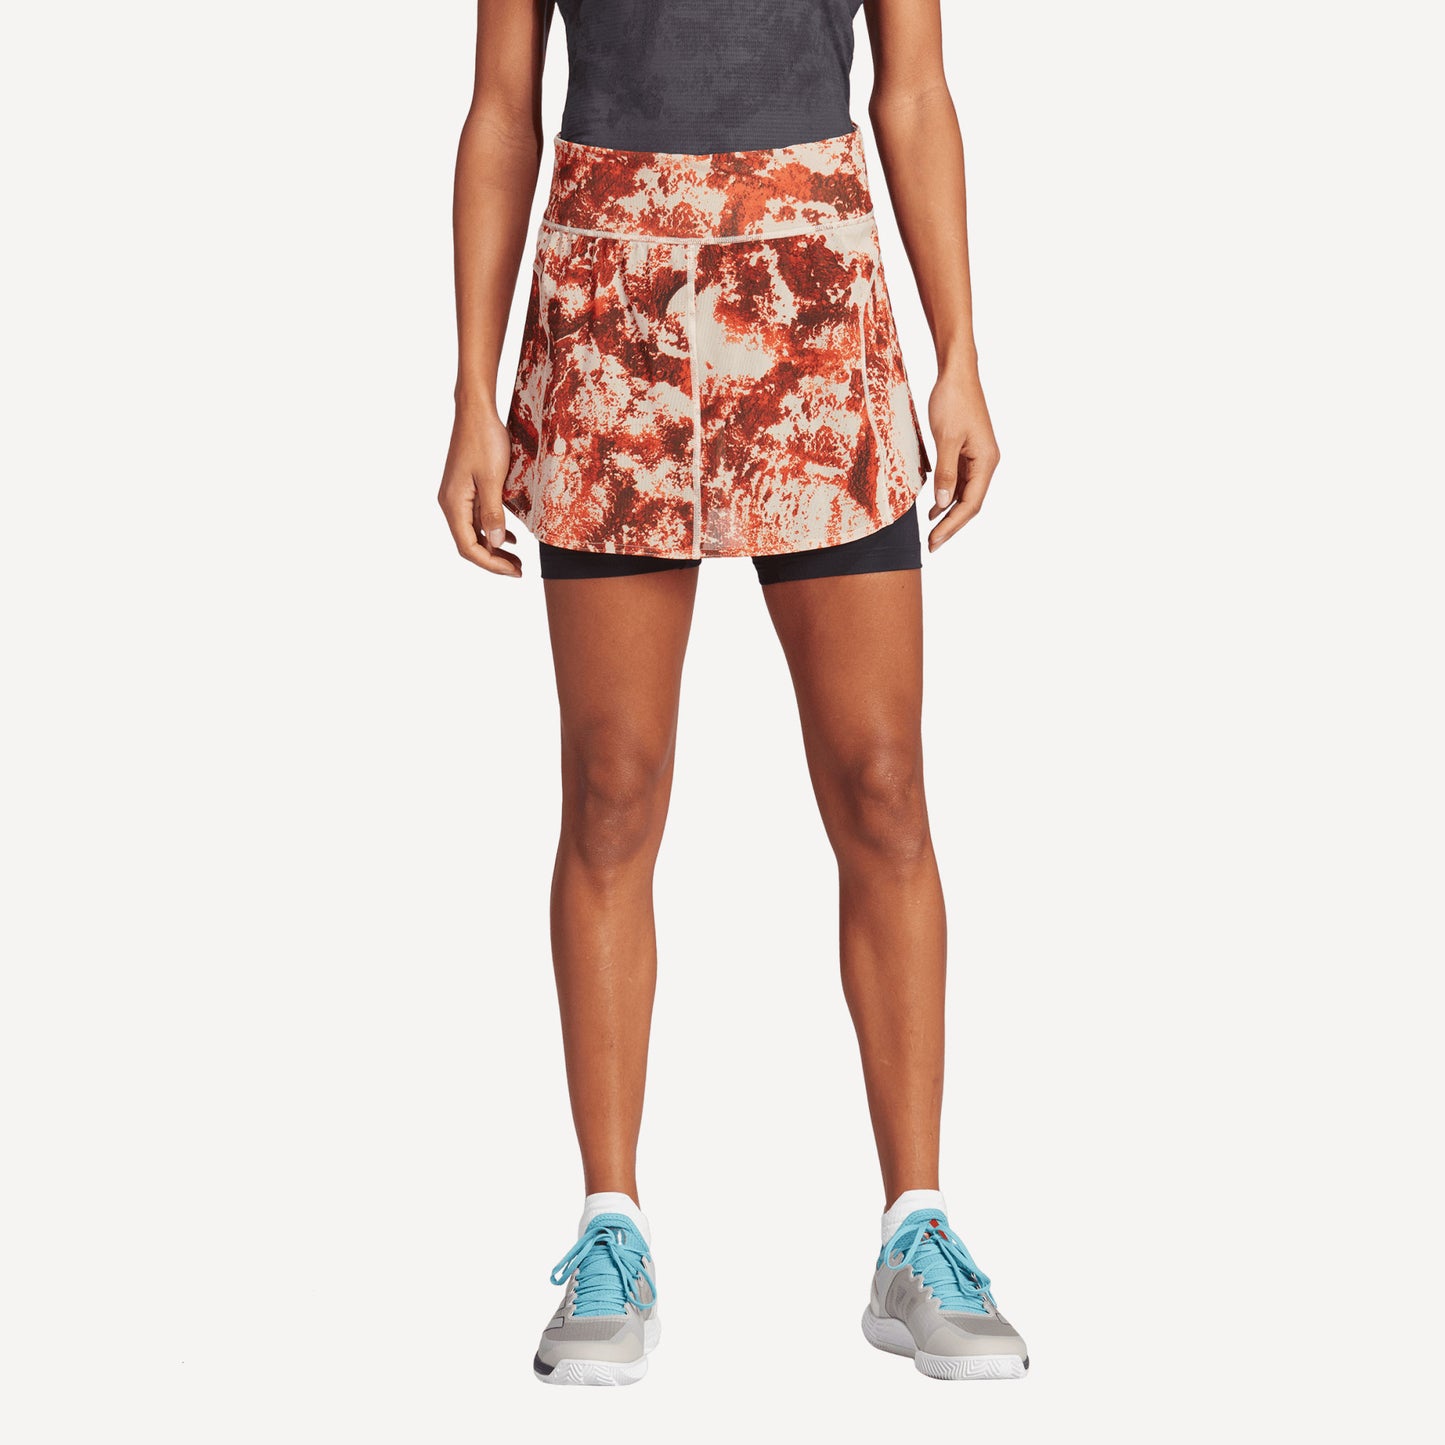 adidas Paris Match Women's Tennis Skirt Brown (1)